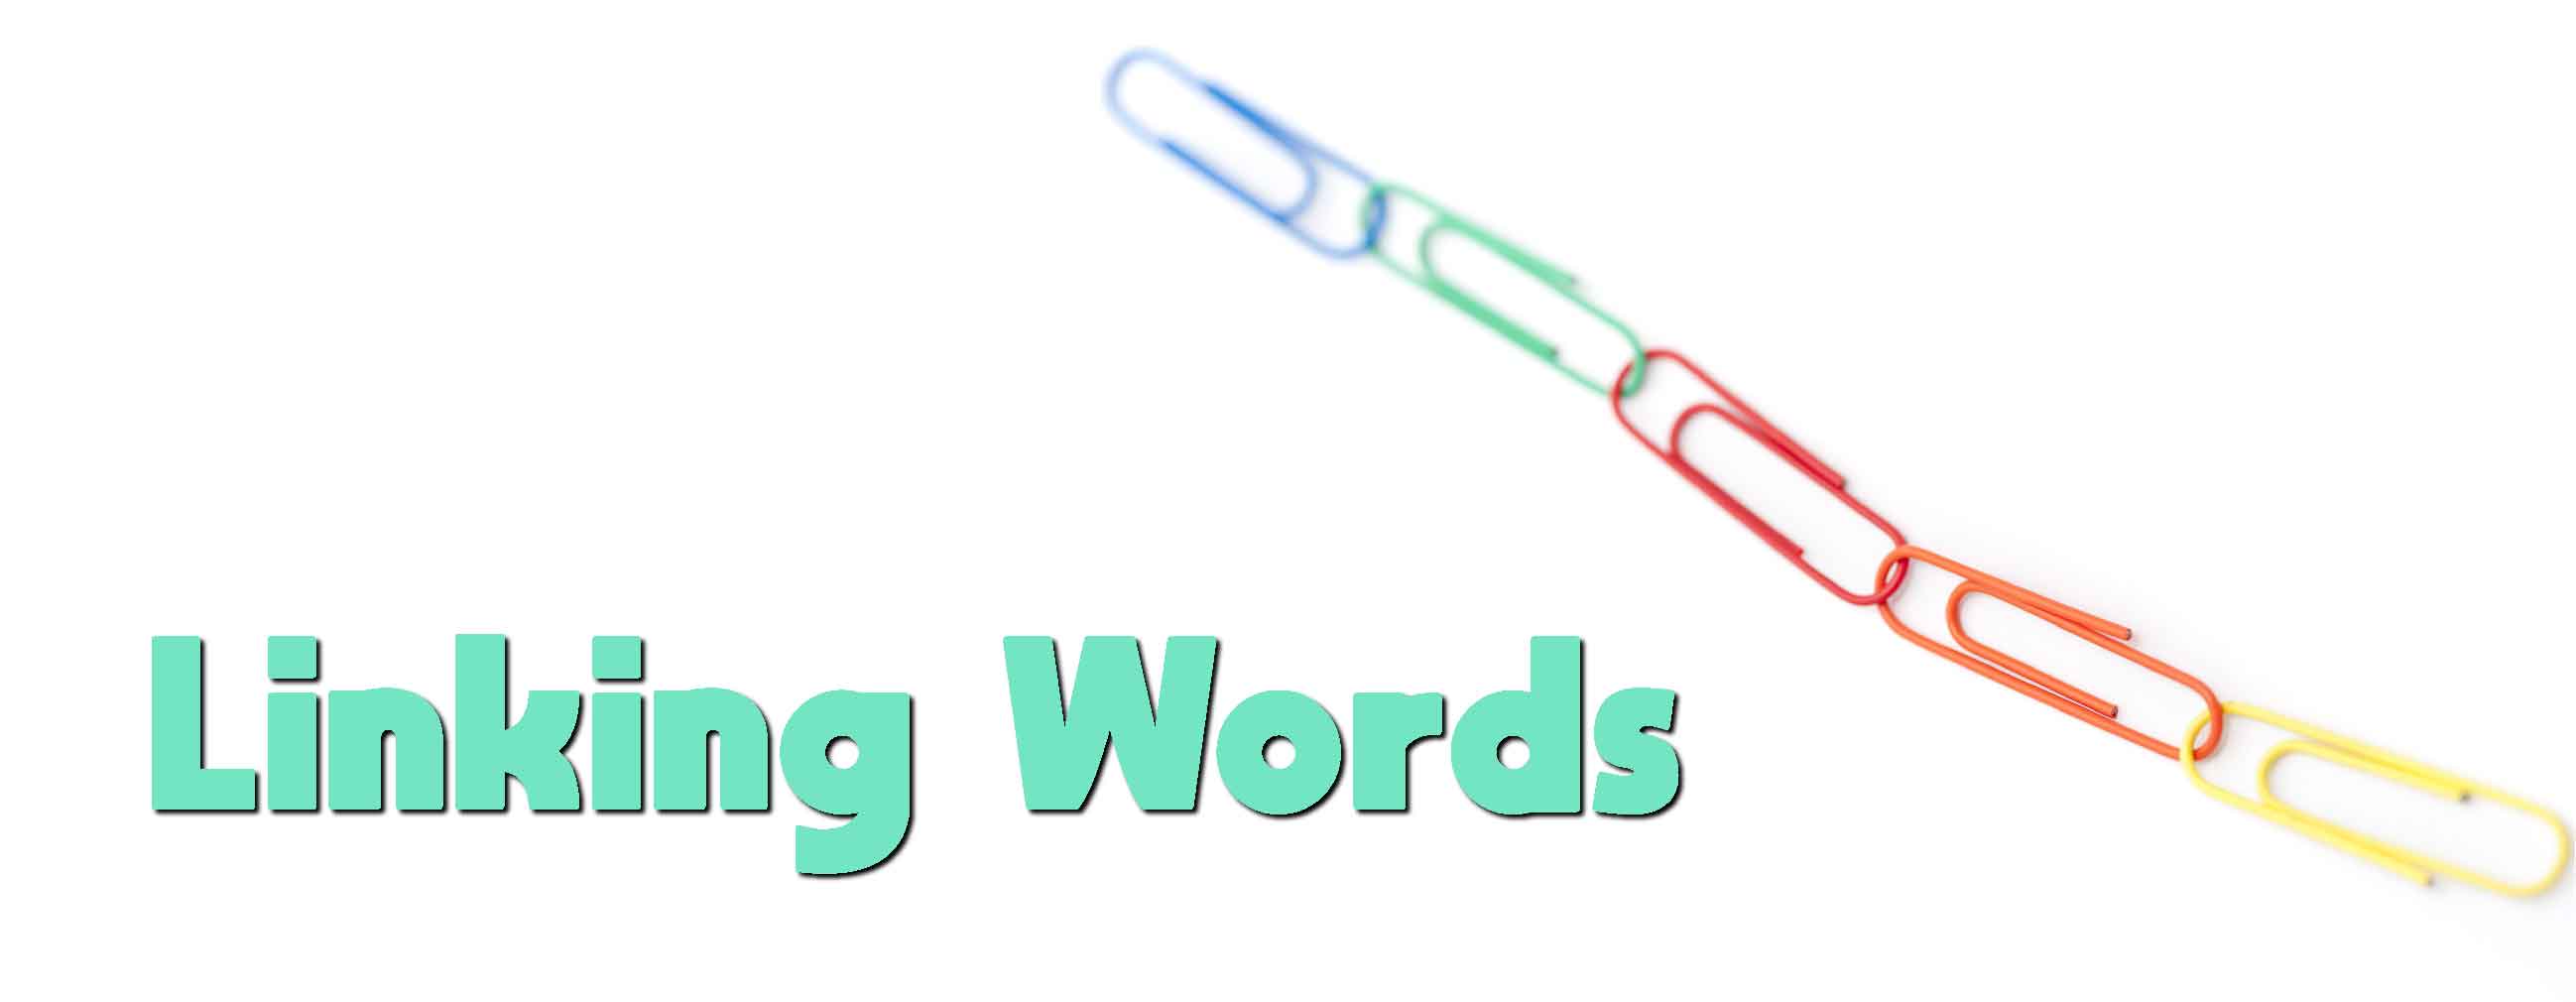 Káº¿t quáº£ hÃ¬nh áº£nh cho linking words